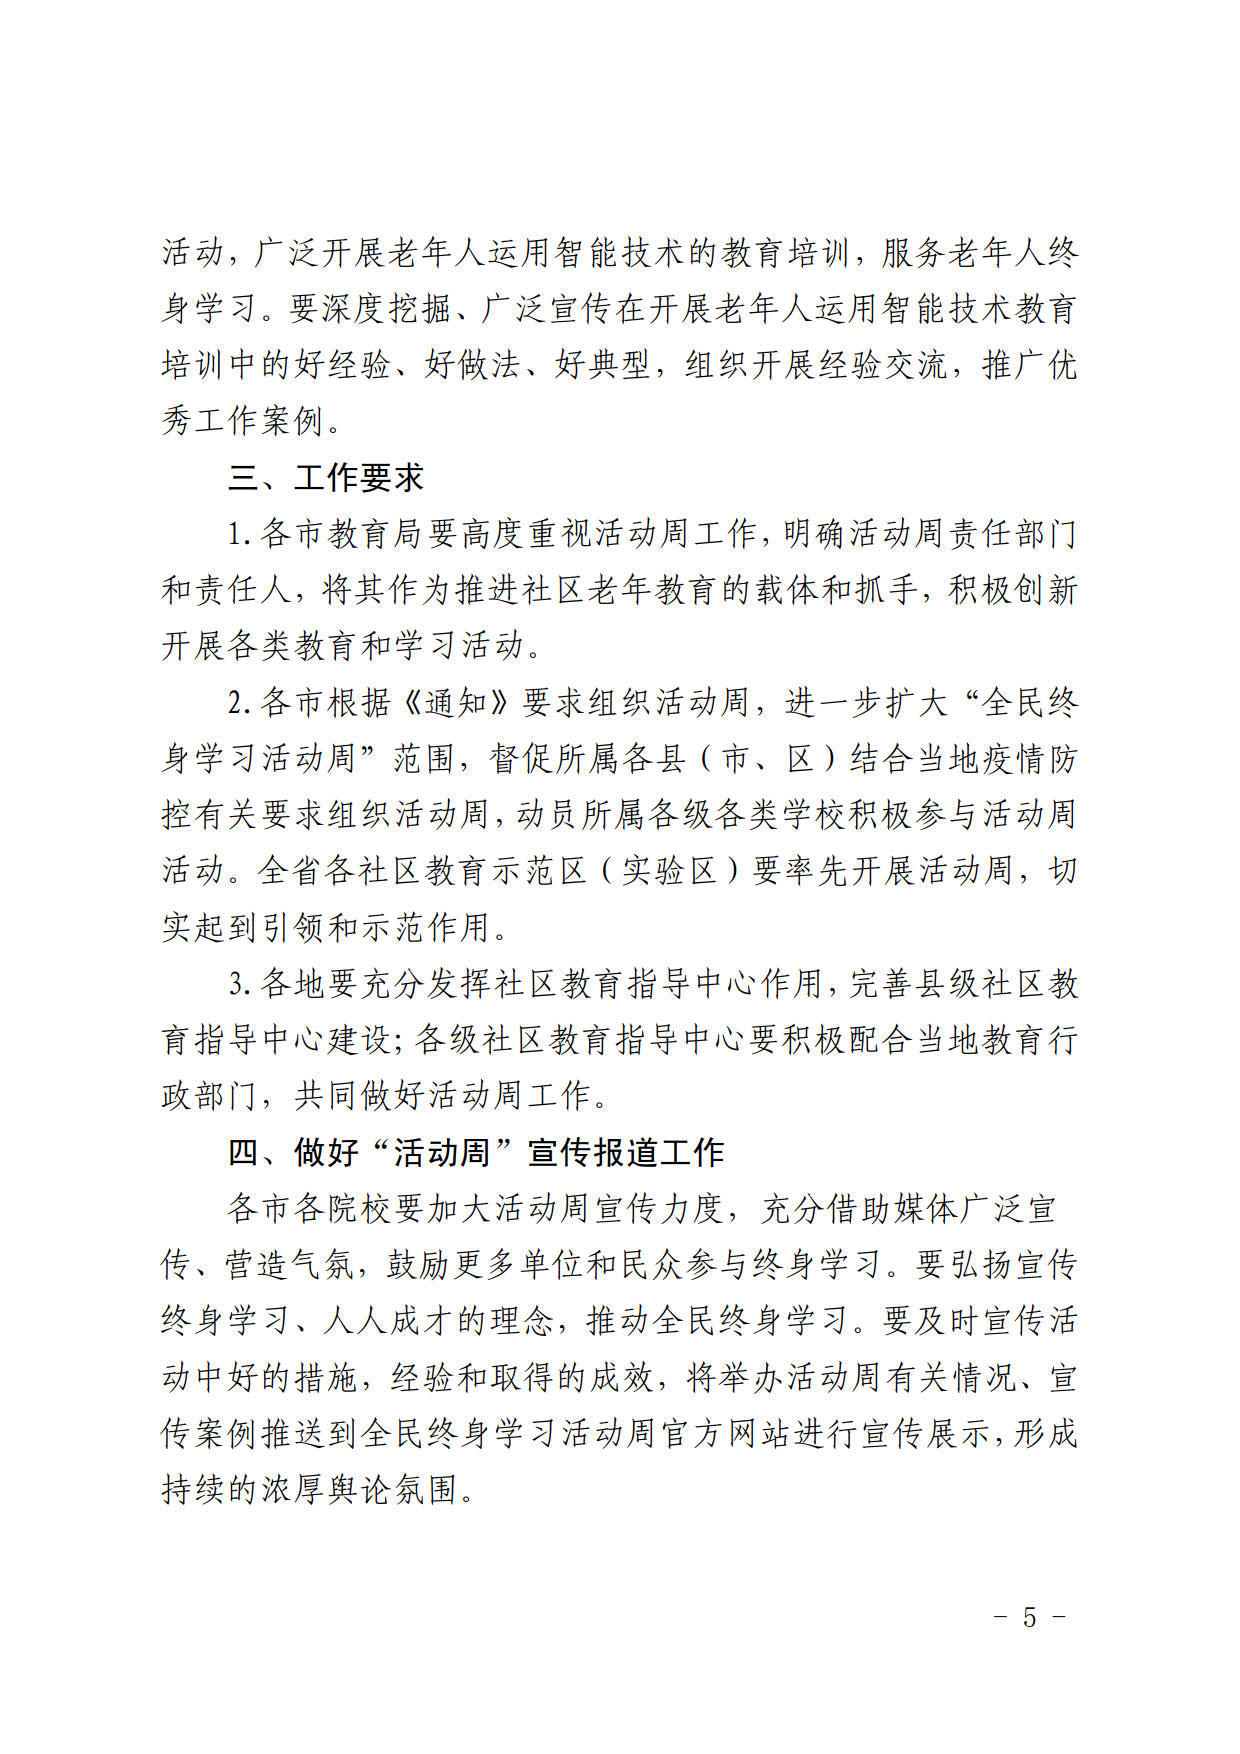 辽宁省教育厅办公室关于做好2021年全民终身学习活动周工作的通知(2)_6.jpg